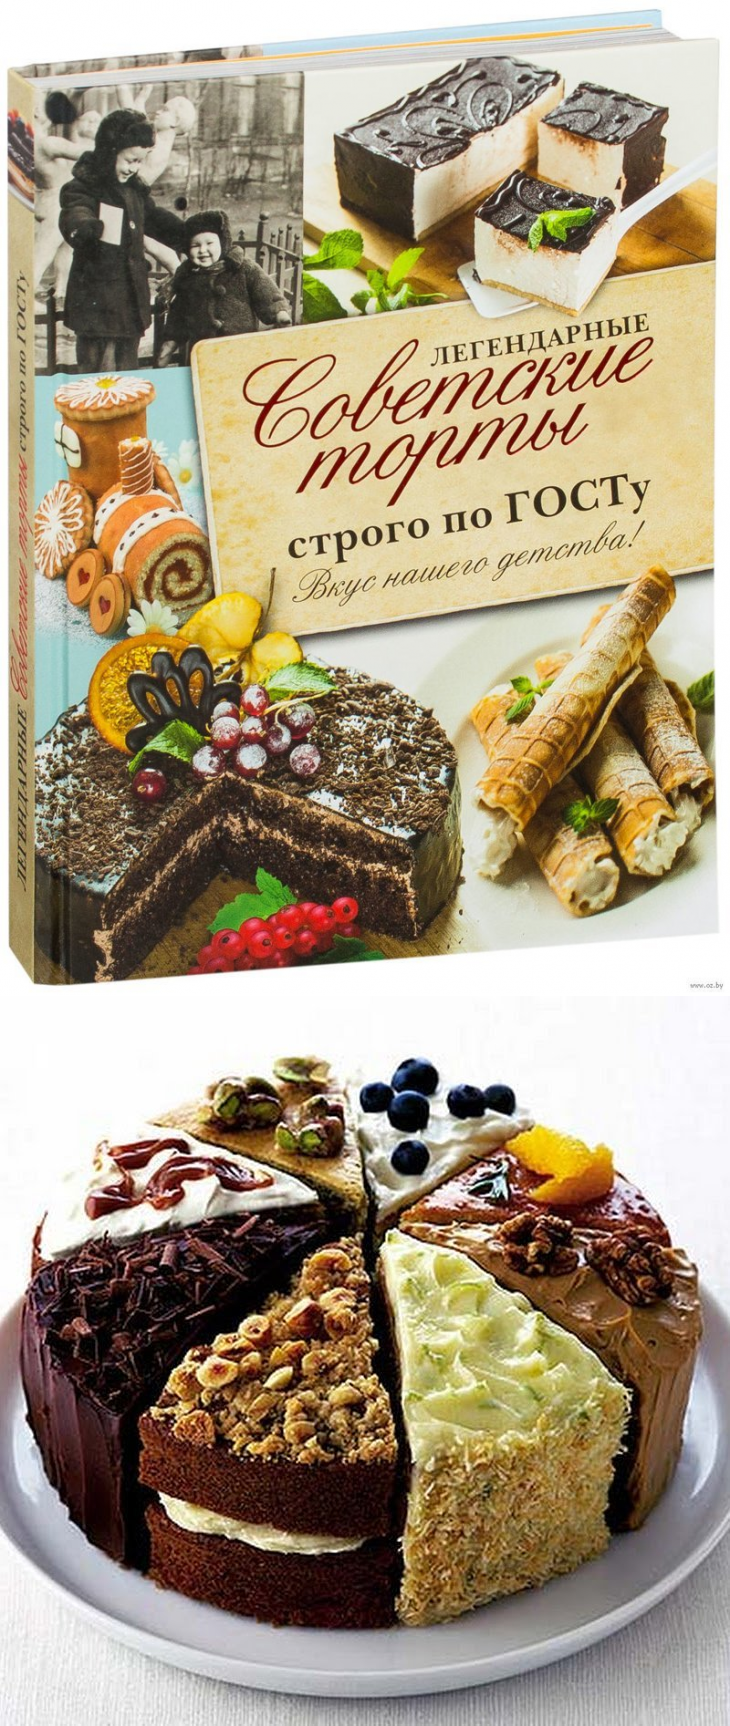 Легендарные торты. Советские торты. Советские торты и пирожные. Легендарные советские торты. Книги с рецептами тортов советского времени.